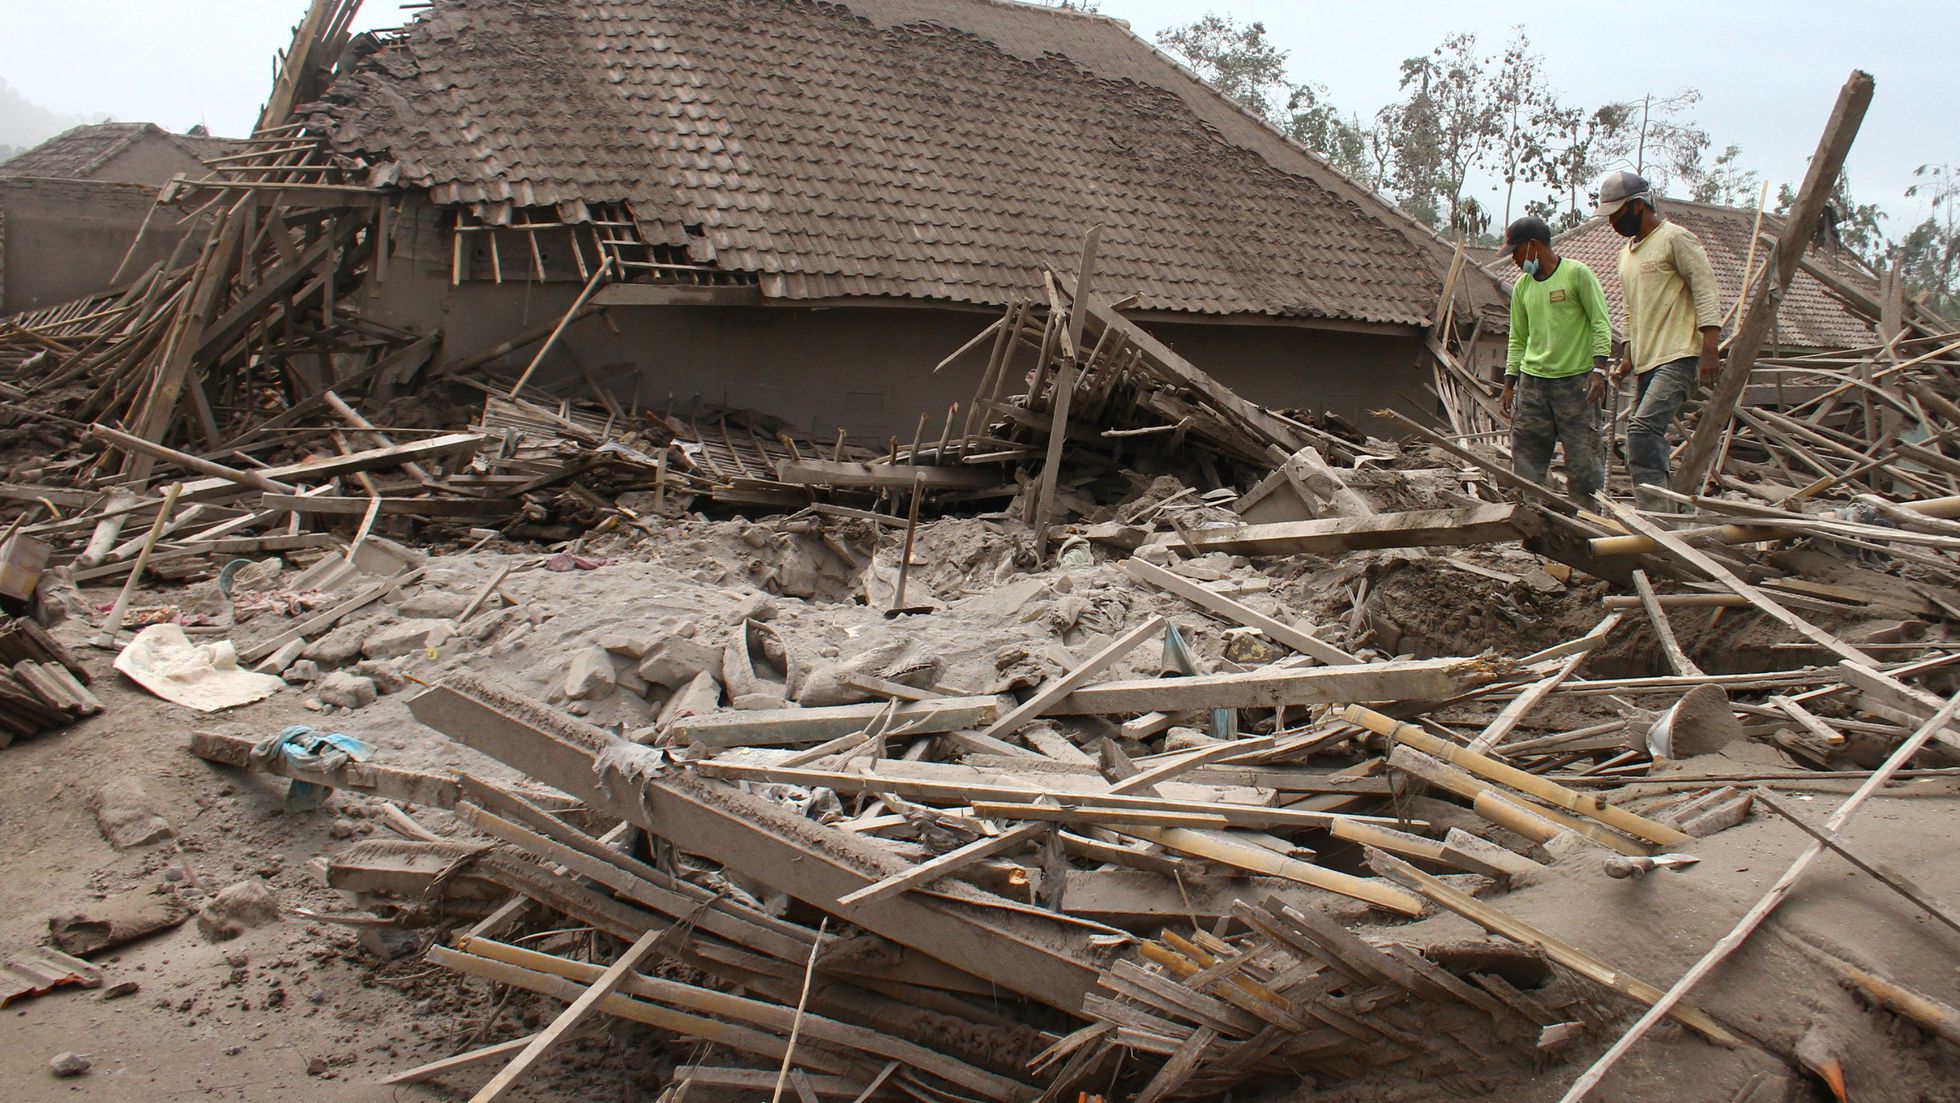 Balance parcial: van 13 muertos tras erupción de volcán en Indonesia